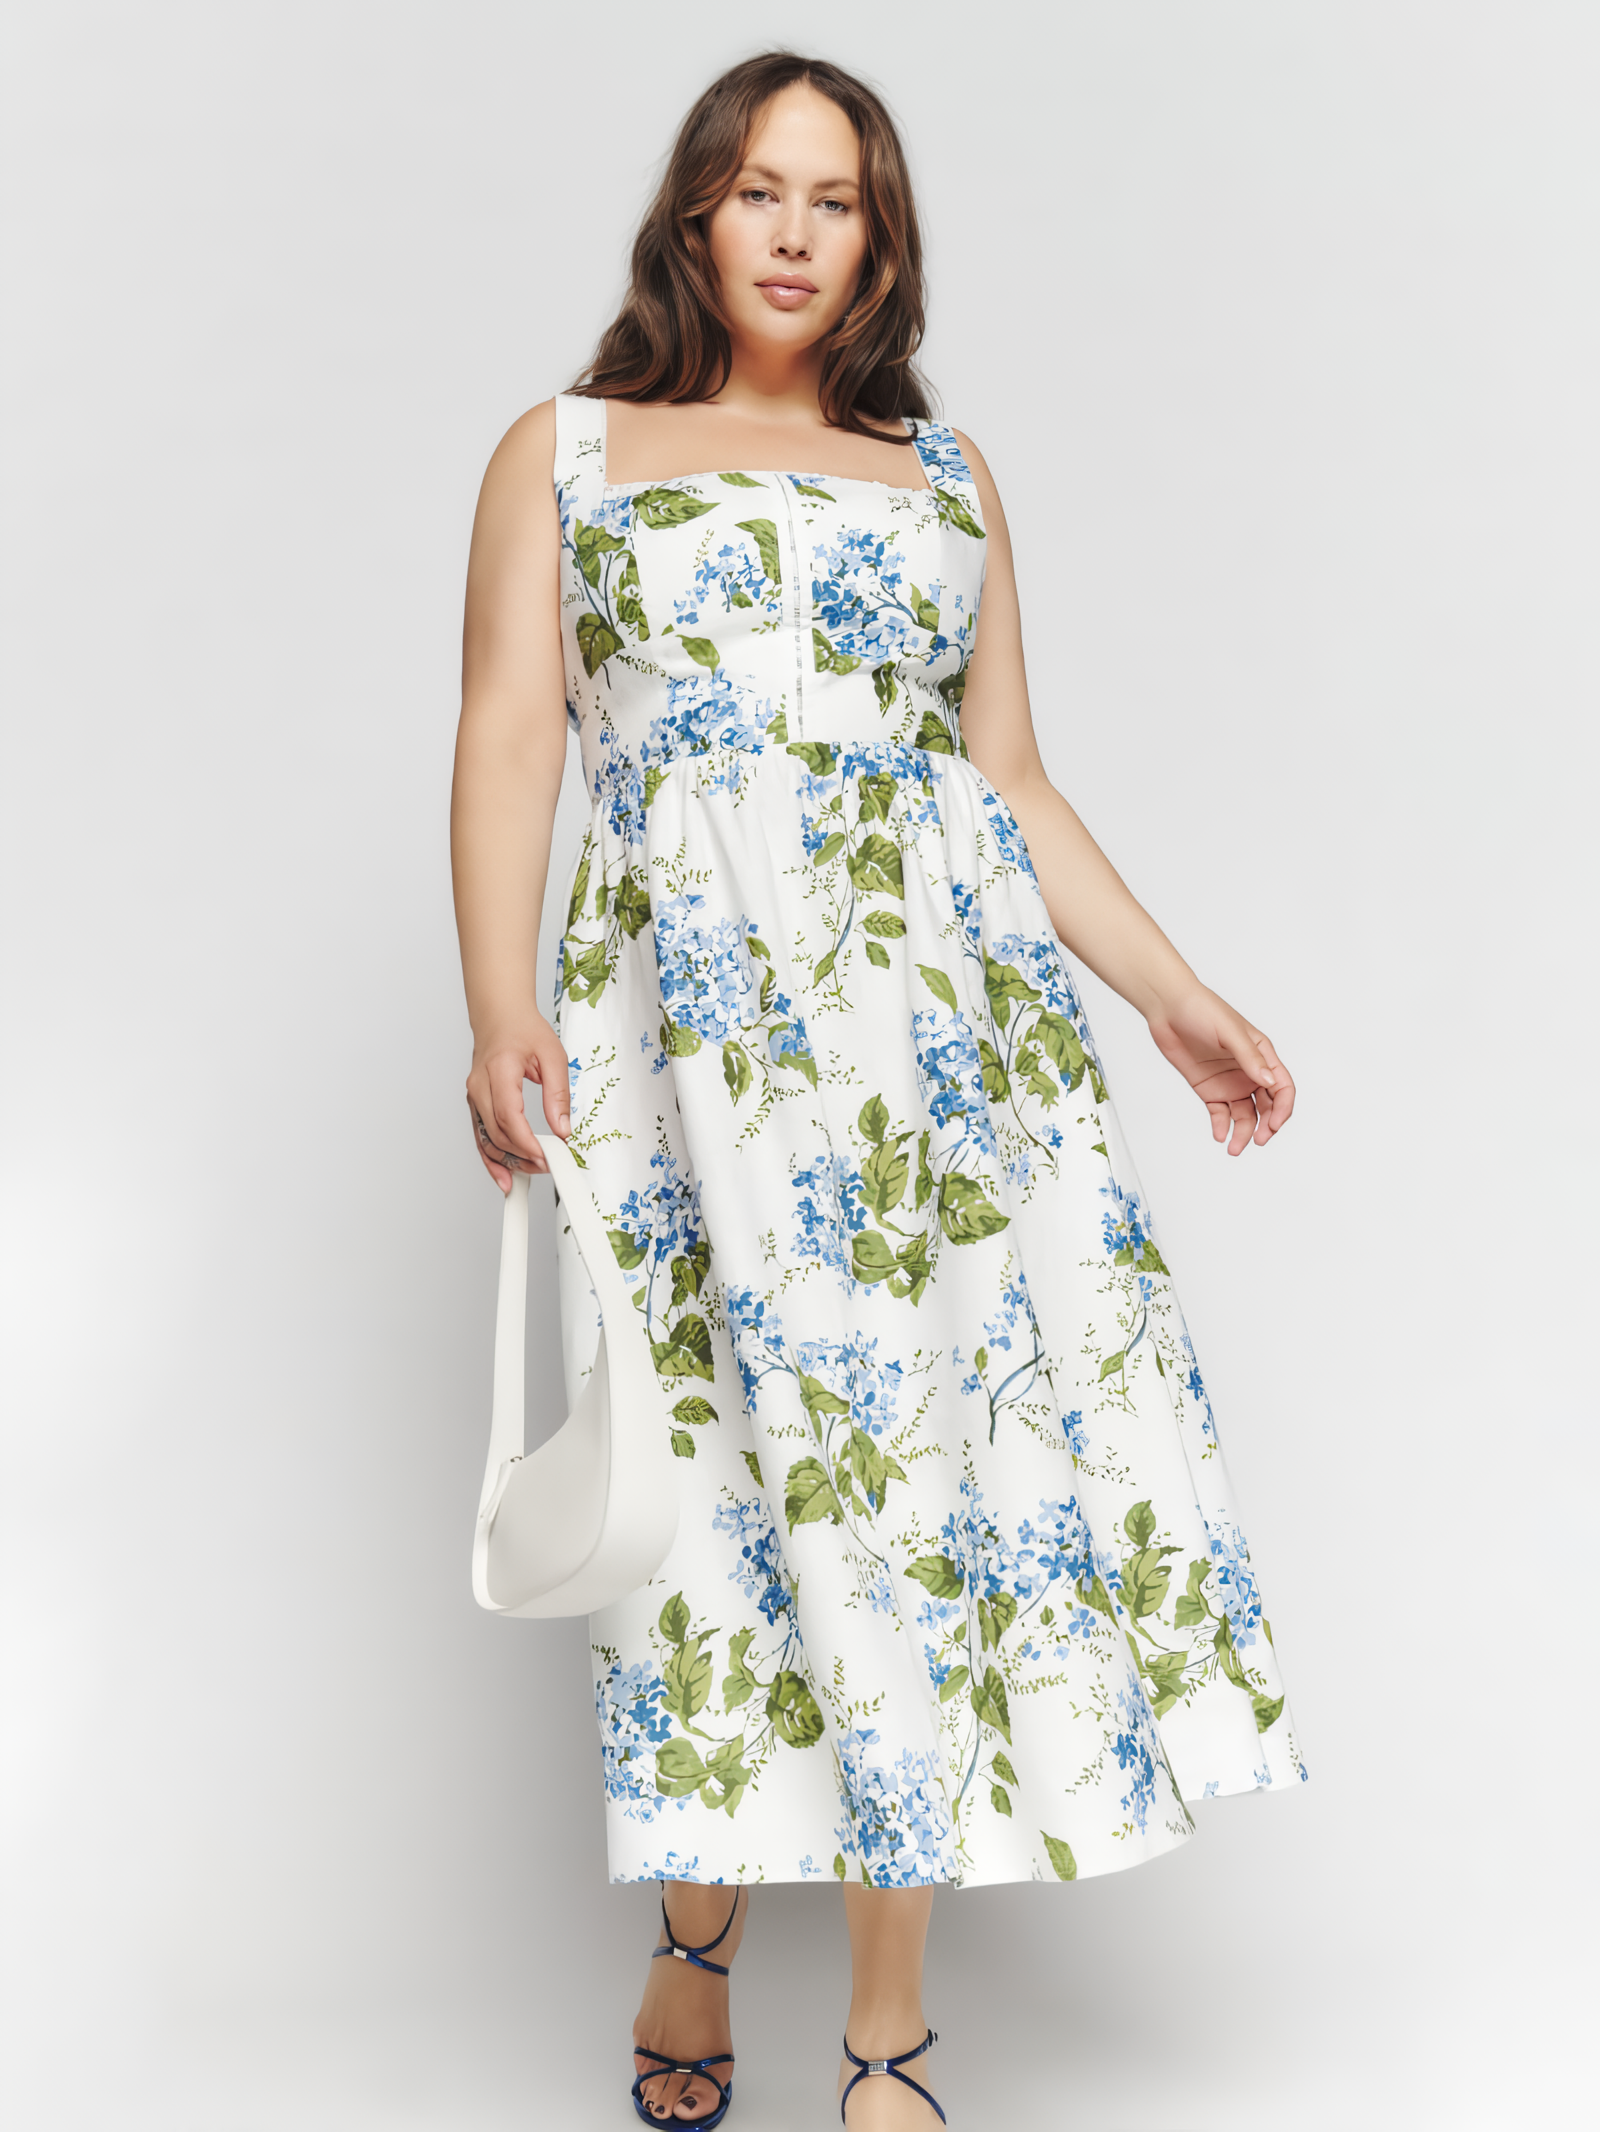 Tagliatelle Linen Dress (Buy 2 Free Shipping)